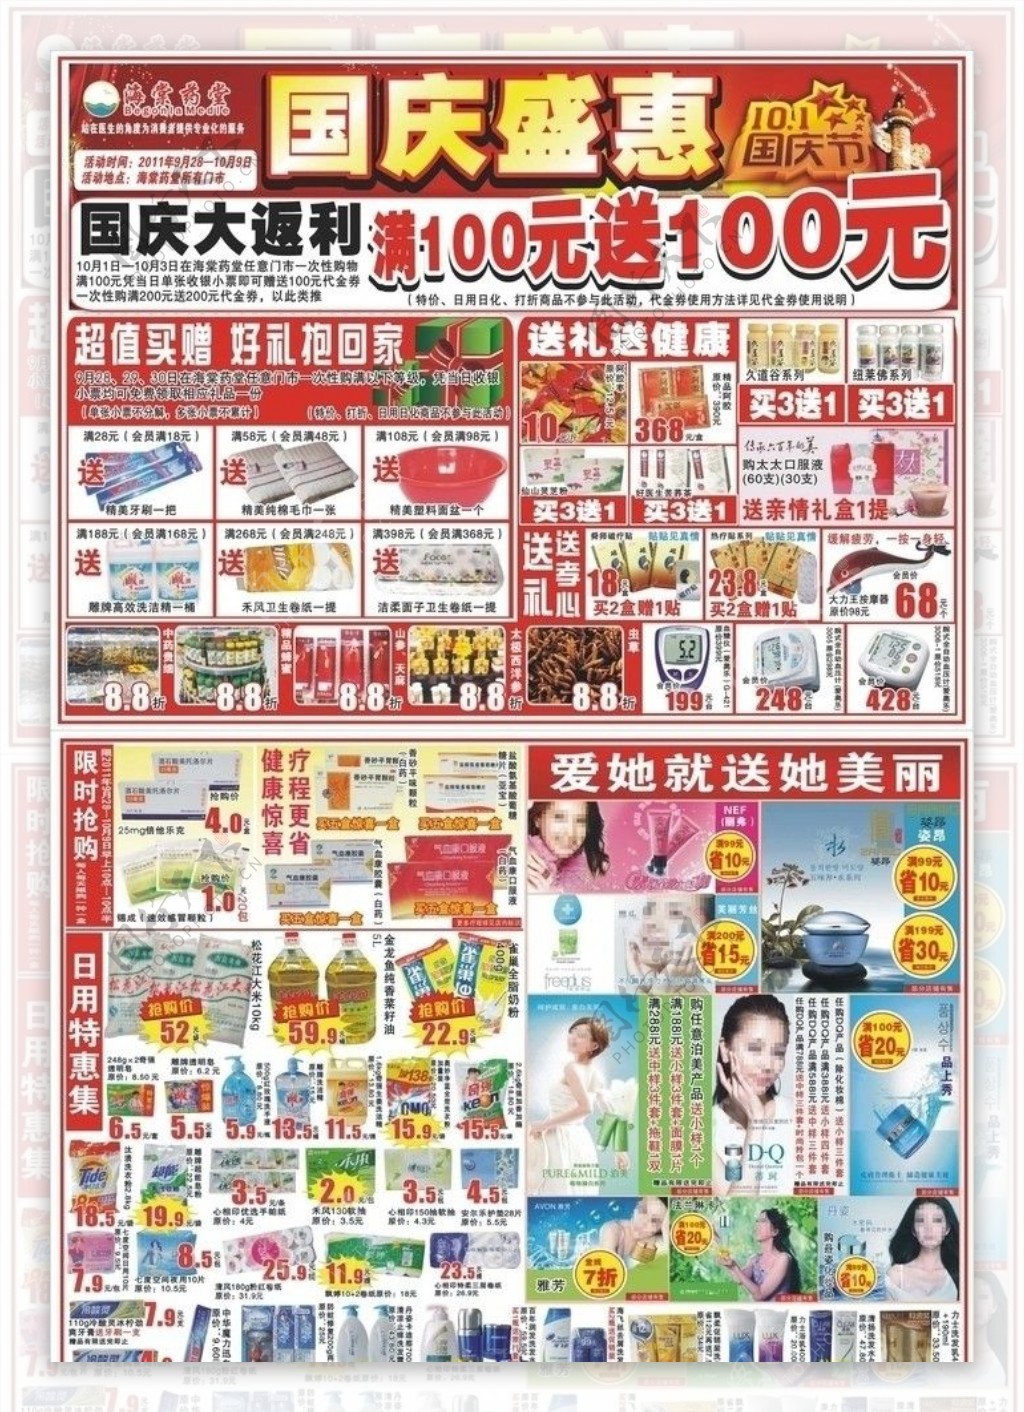 国庆超市宣传单图片